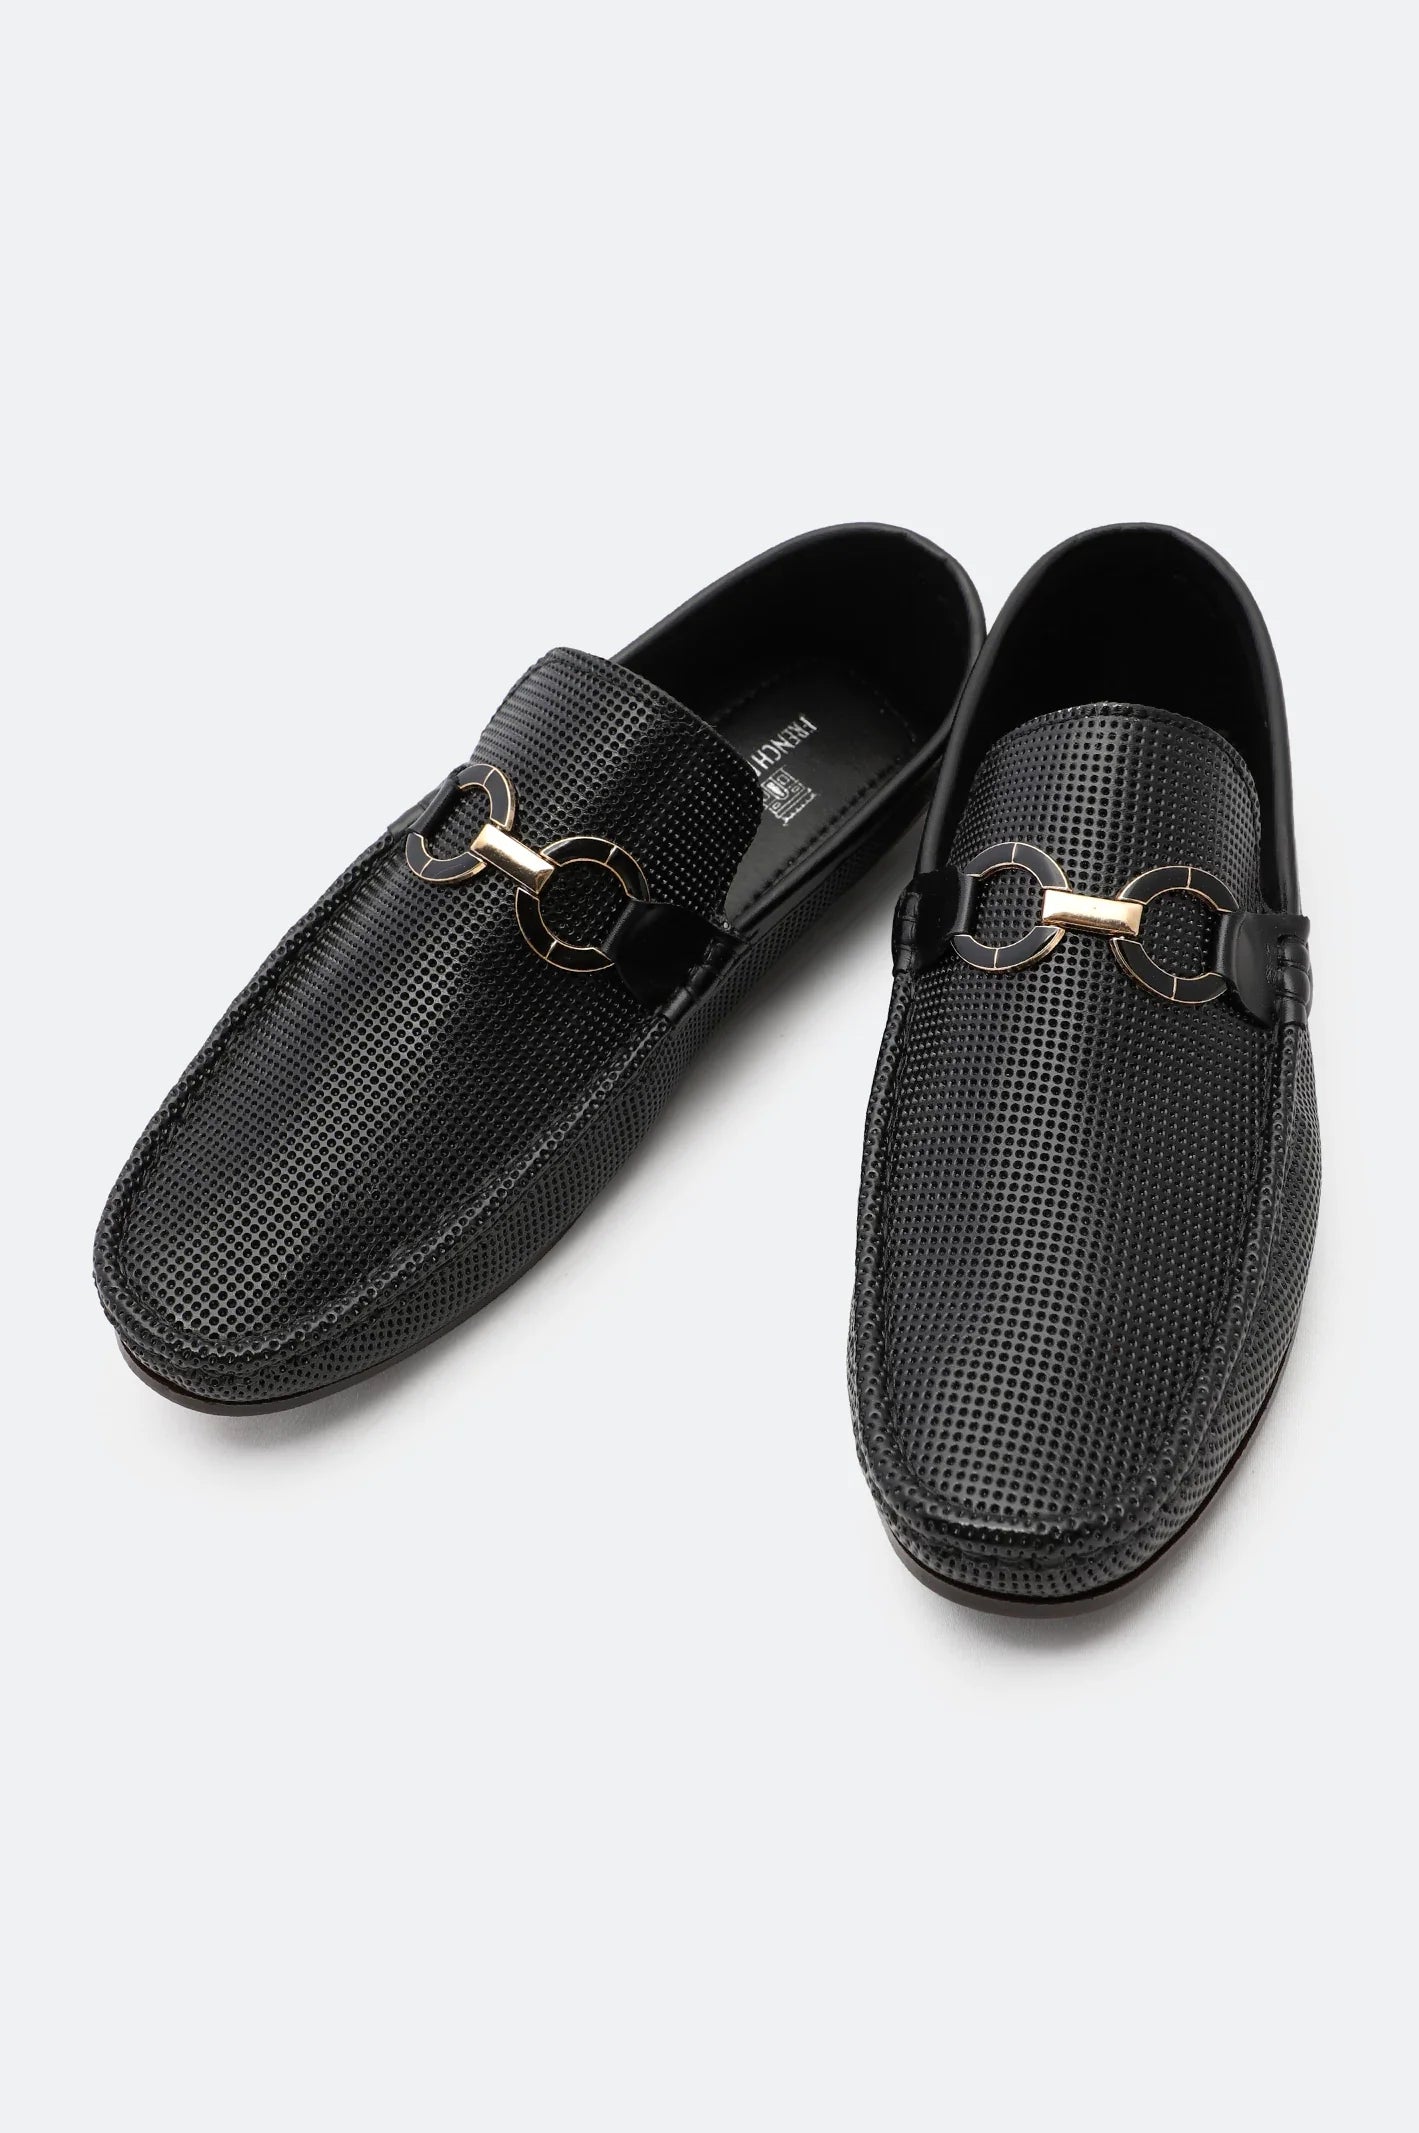 Black Men Casual Mocassins Shoes